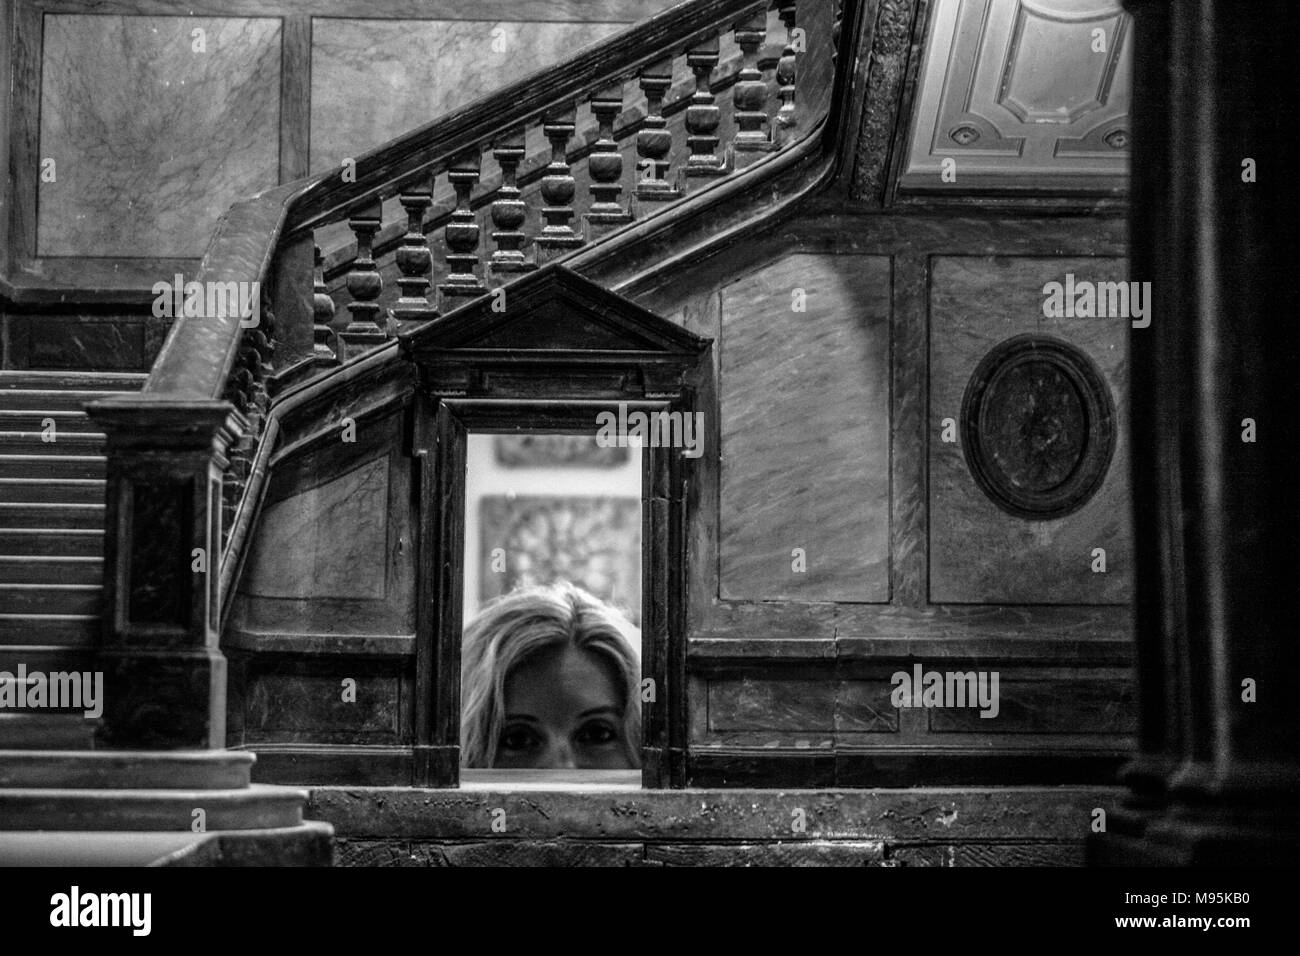 Une image en noir et blanc d'une femme à travers un modèle d'échelle peeps de l'intérieur de l'opéra de Berlin, Berlin, Allemagne Banque D'Images